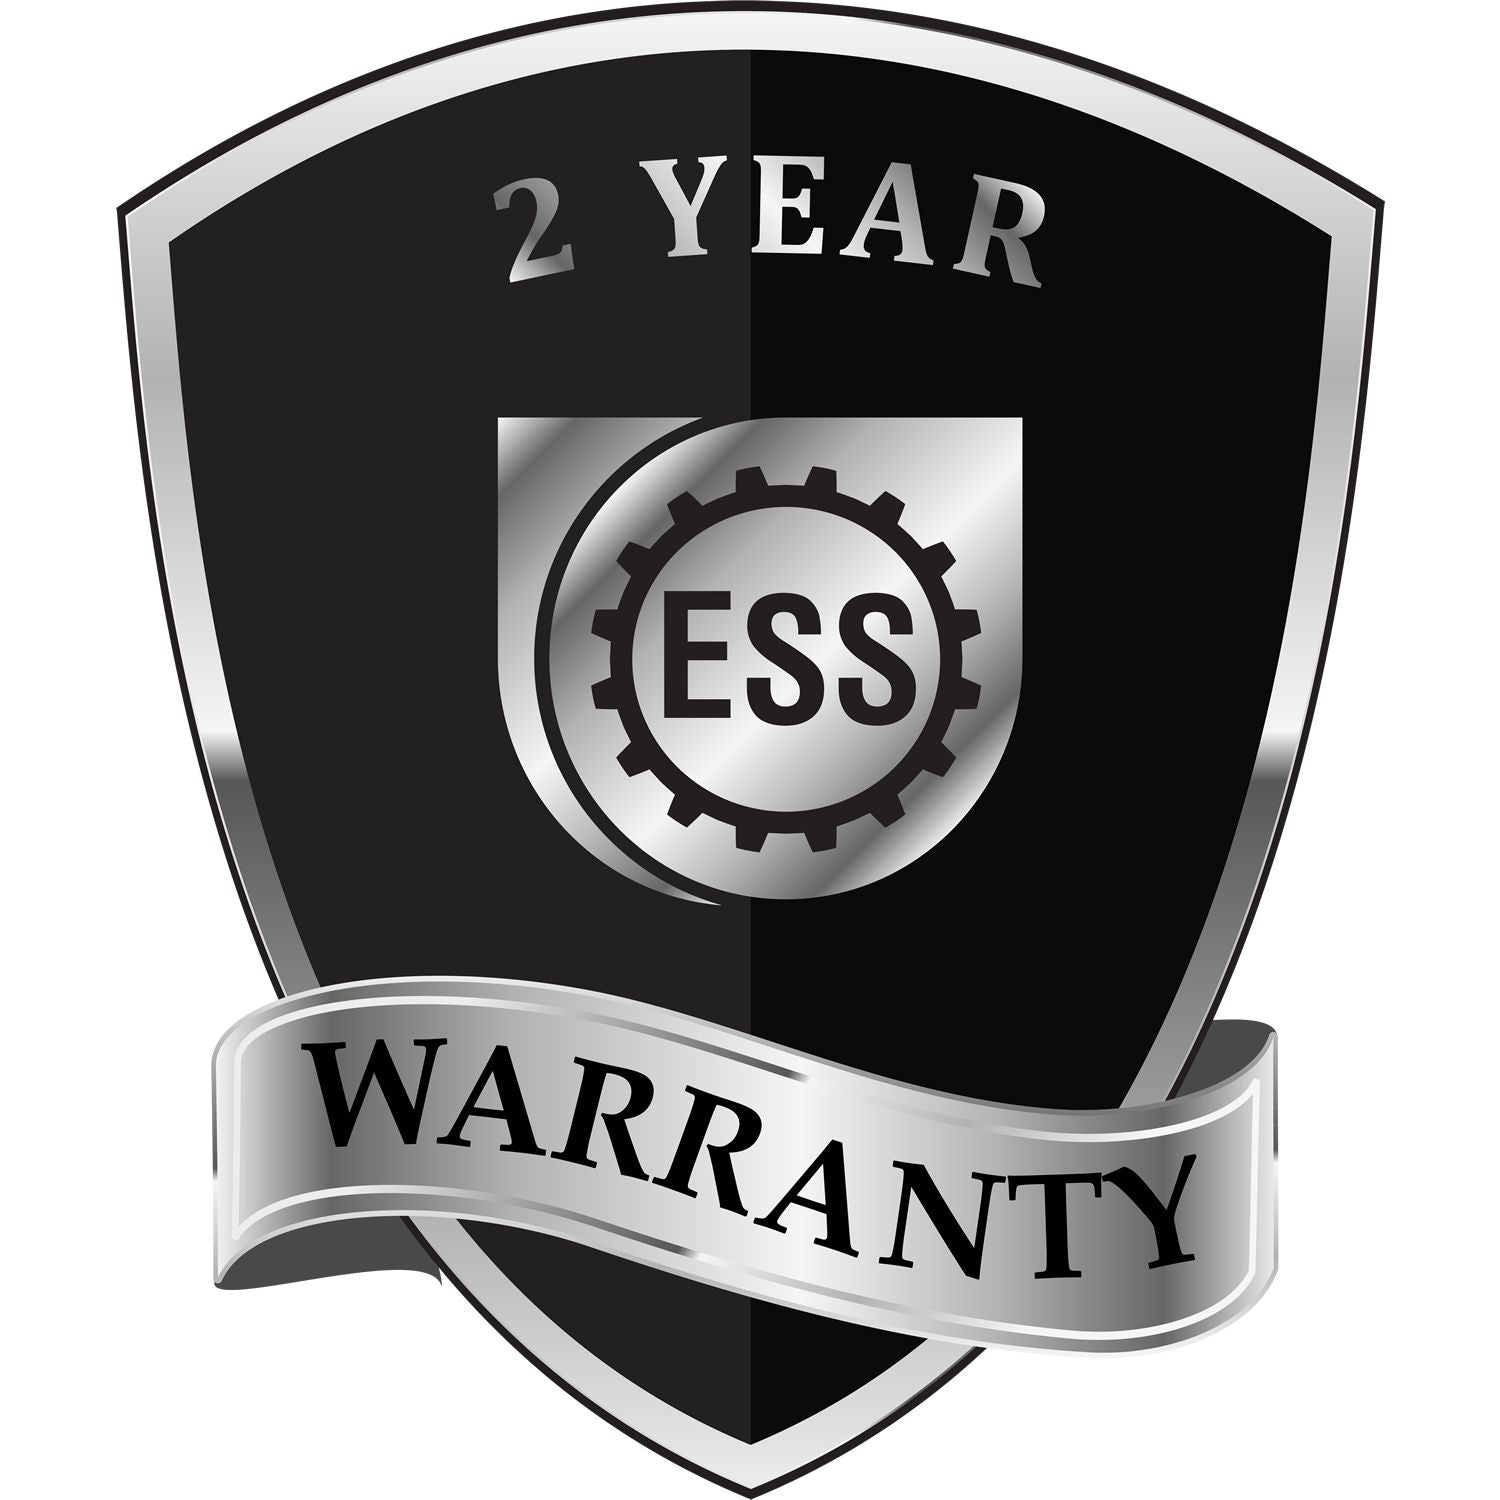 A black and silver badge or emblem showing warranty information for the Hybrid Alabama Land Surveyor Seal